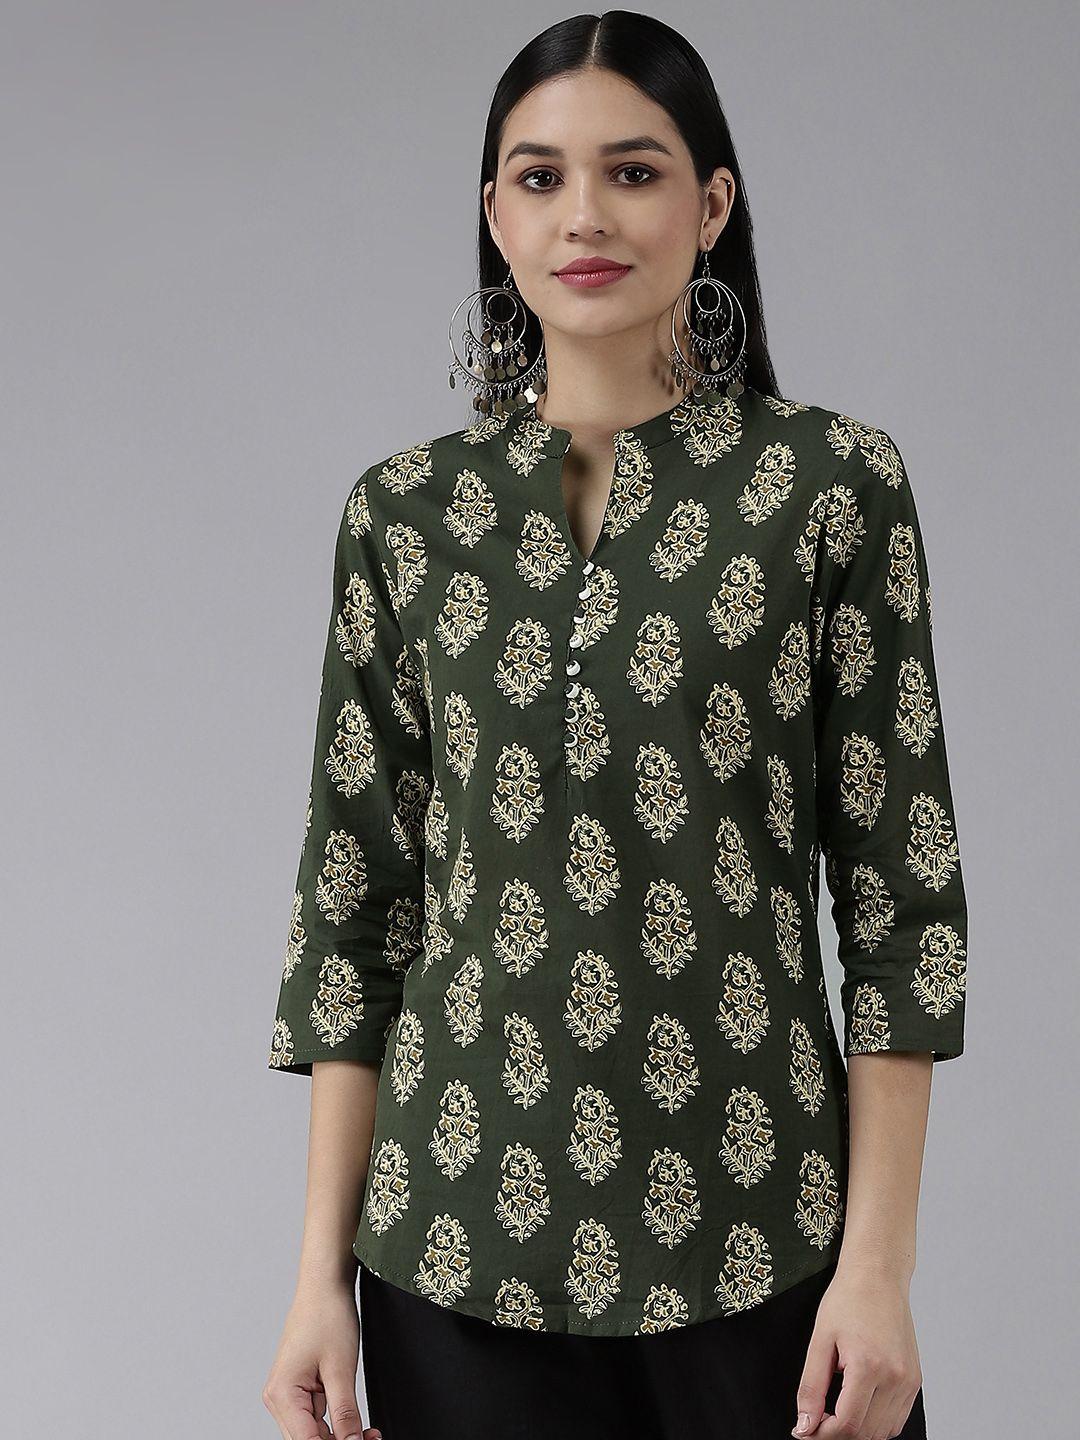 yufta women green ethnic motifs printed mandarin collar top